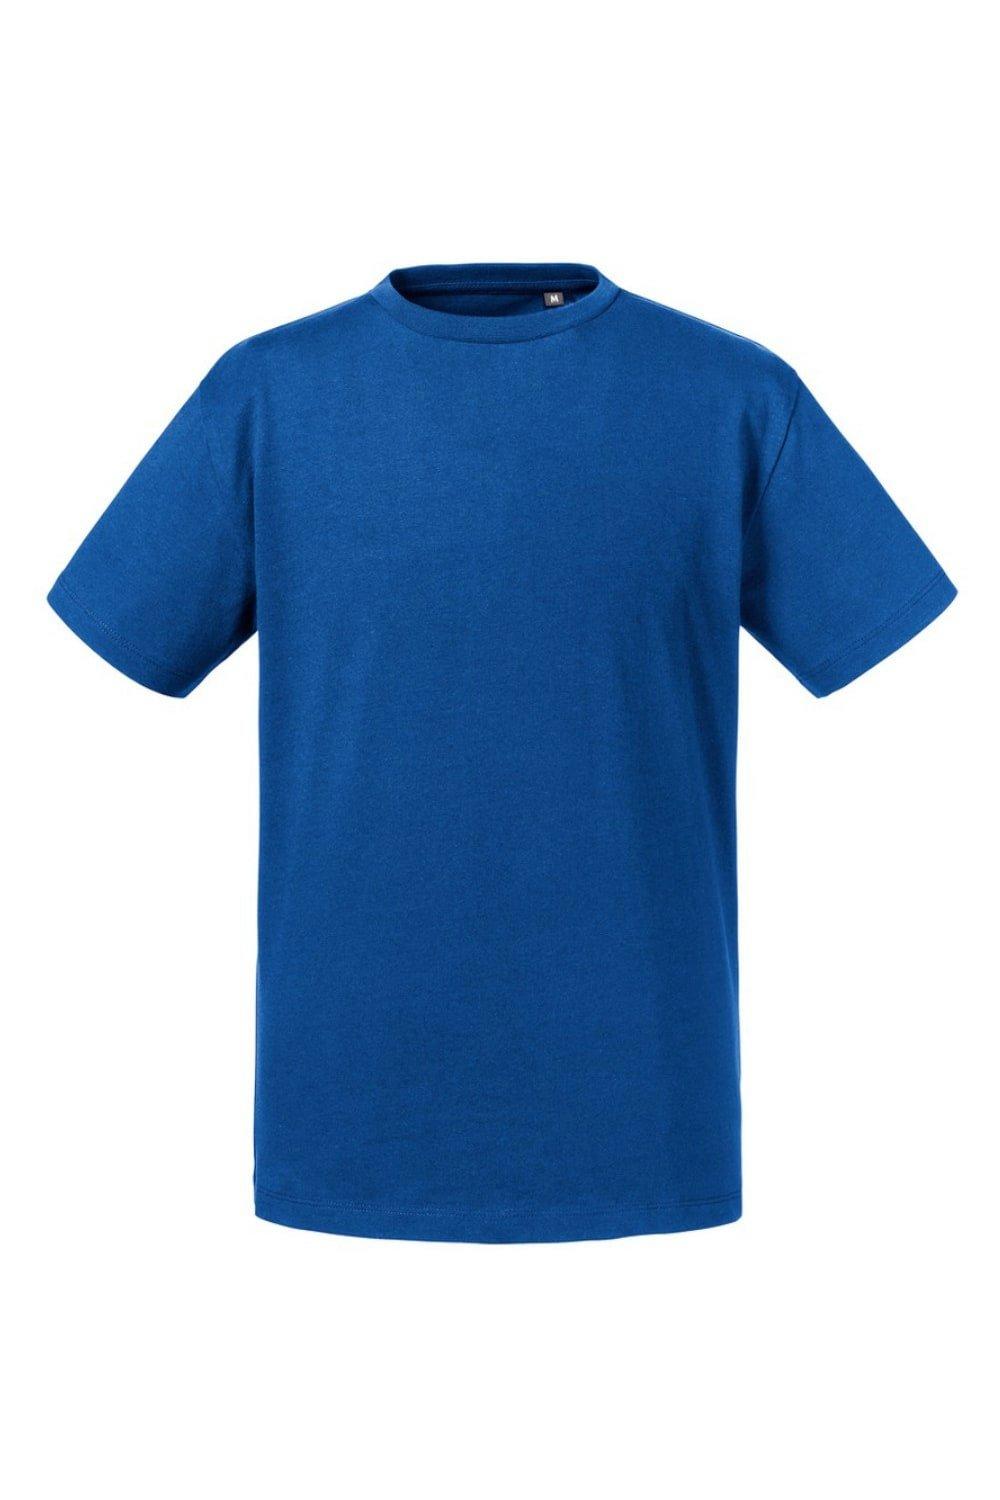 Чистая органическая футболка Russell, синий